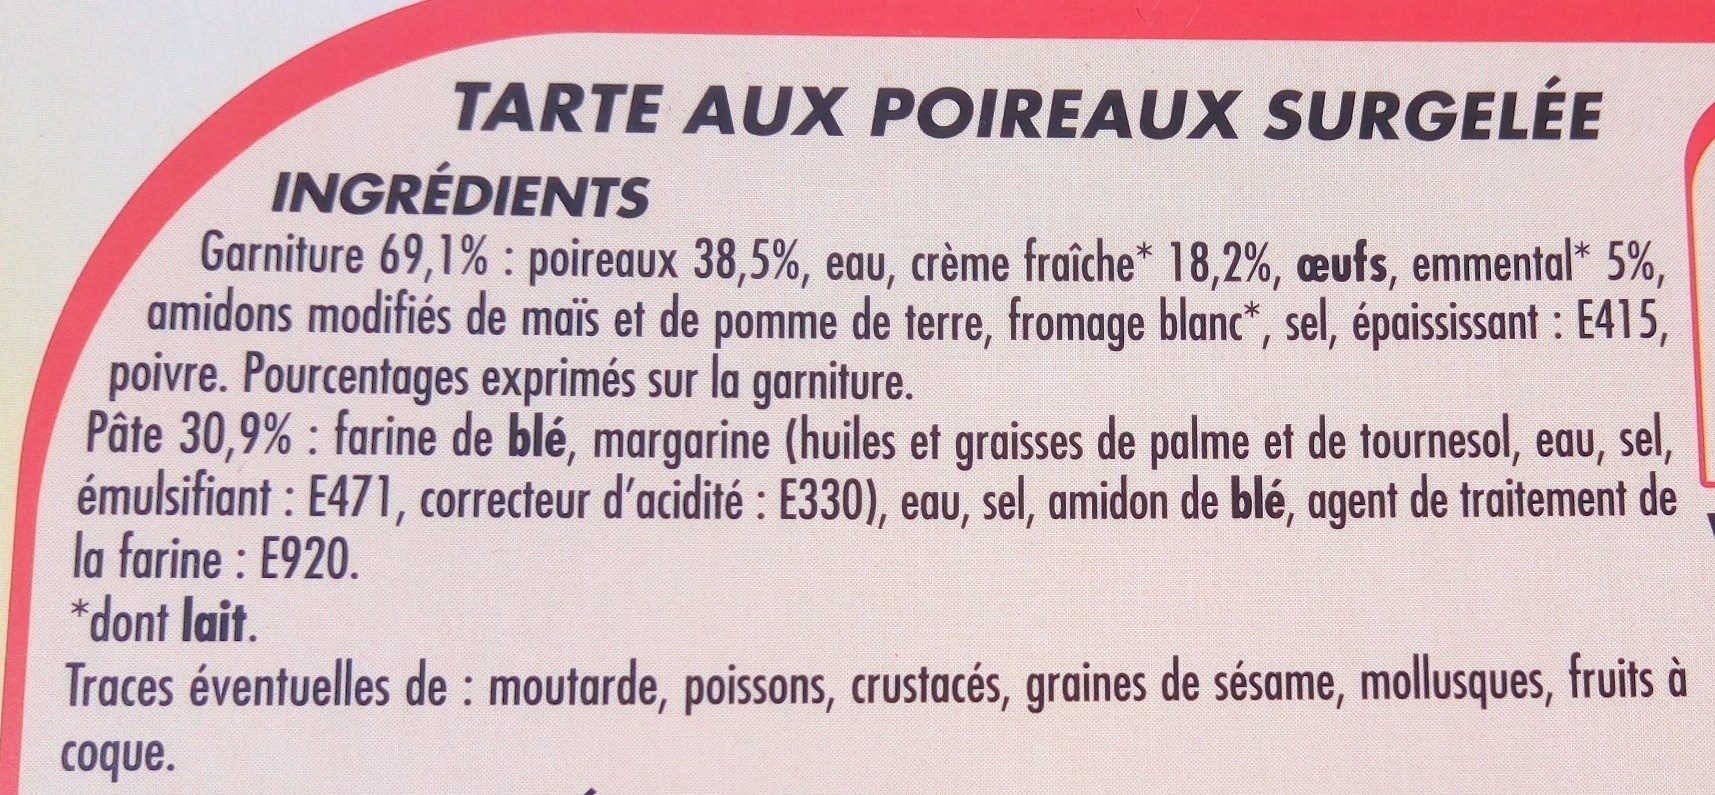 Netto Tarte Aux Poireaux Surgelée - Ingredients - fr